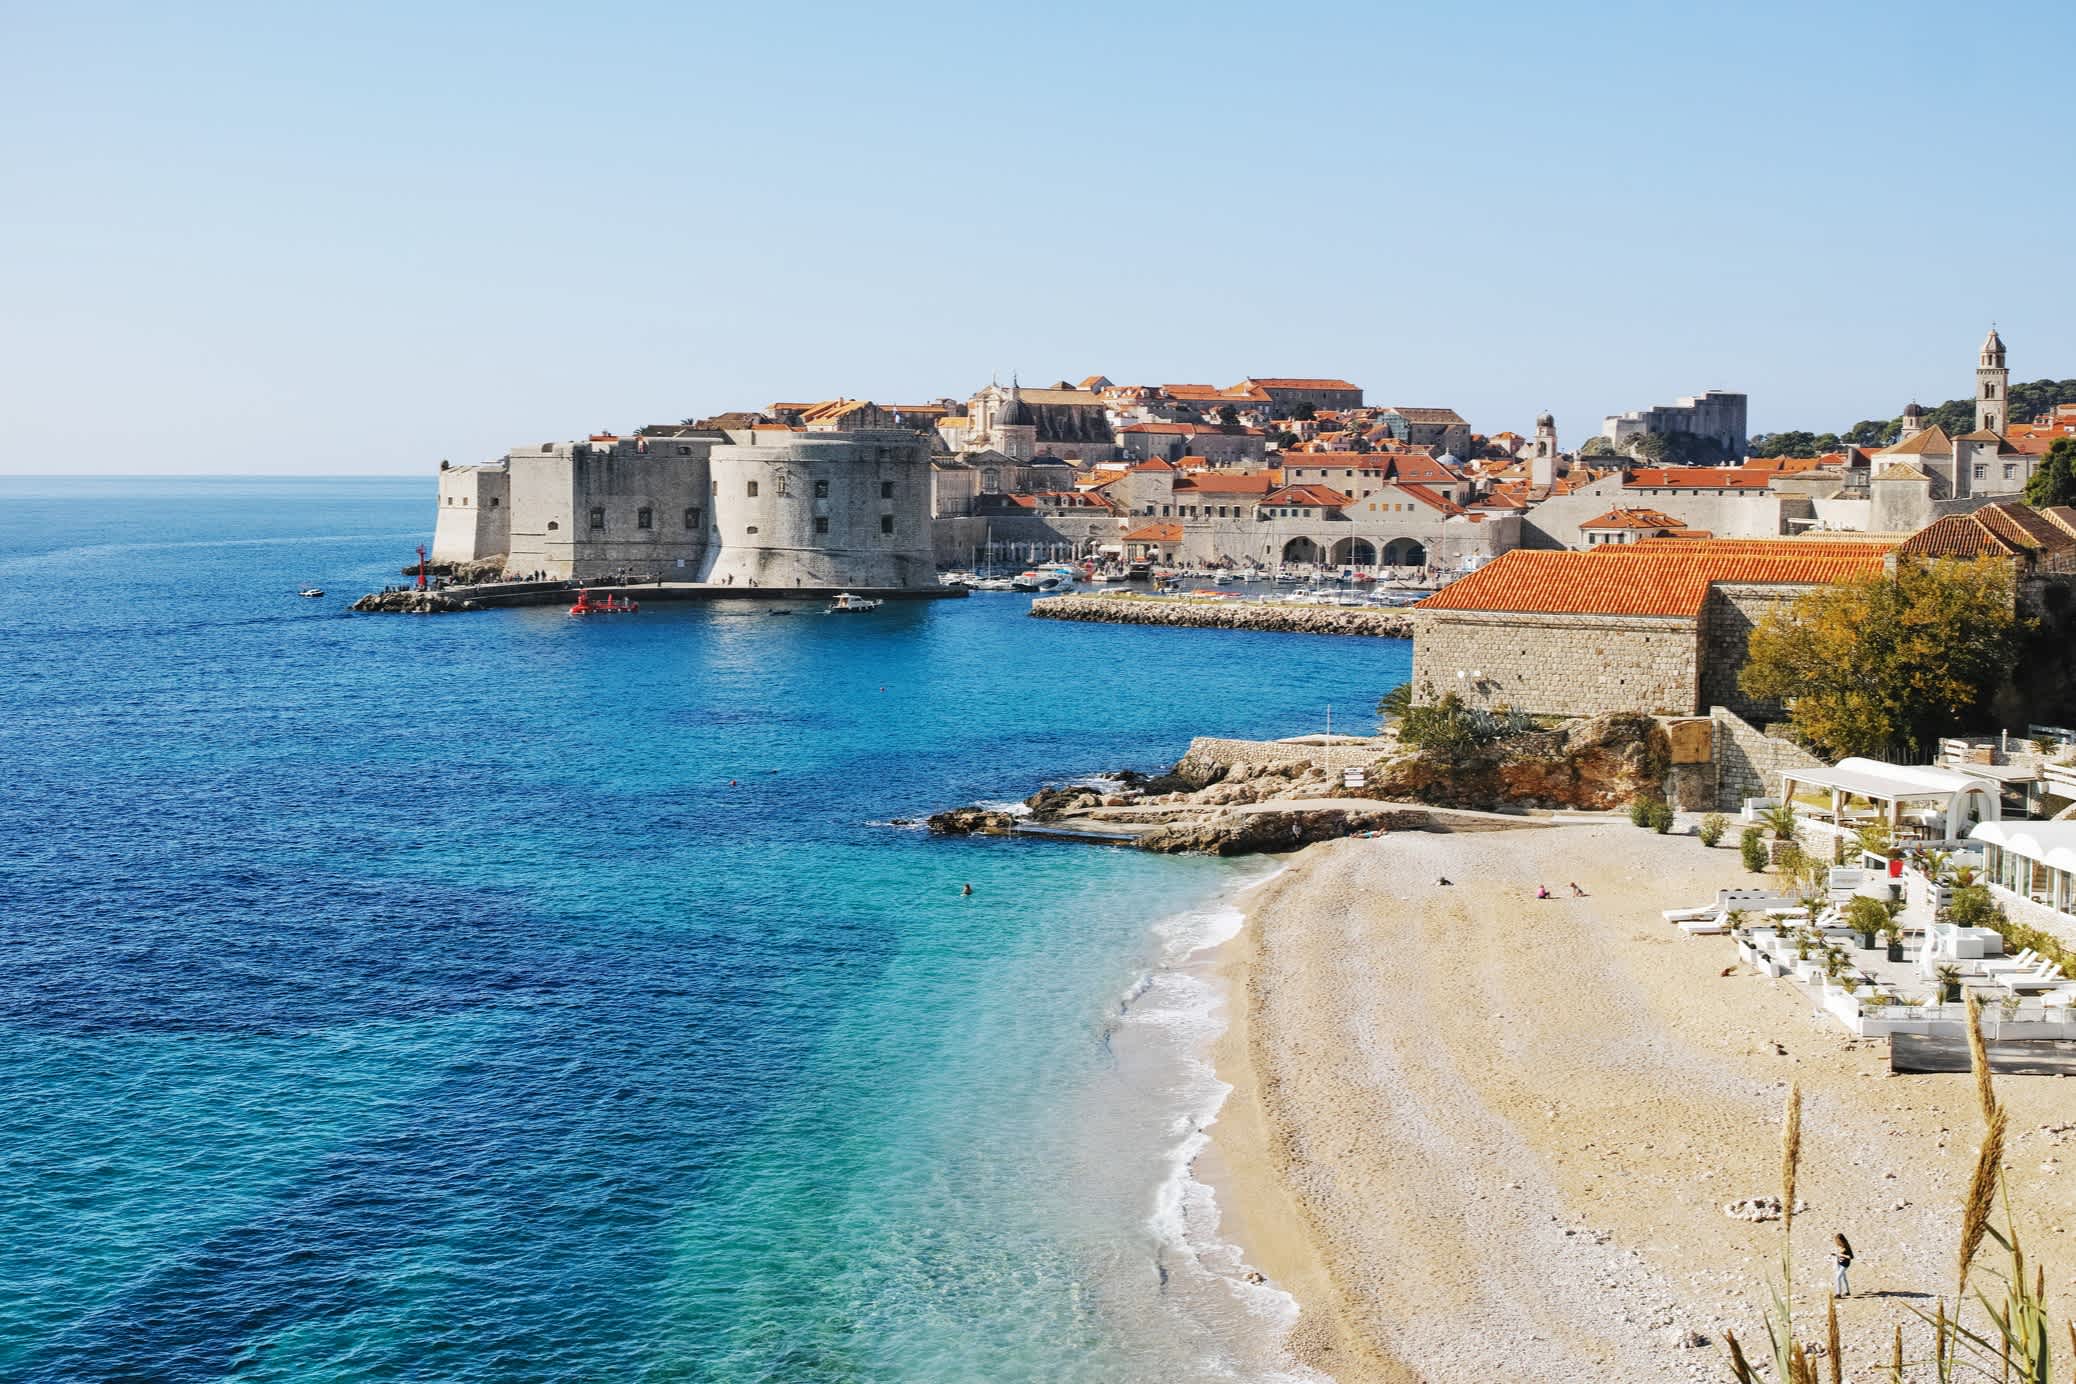 Strand von Dubrovnik von oben gesehen